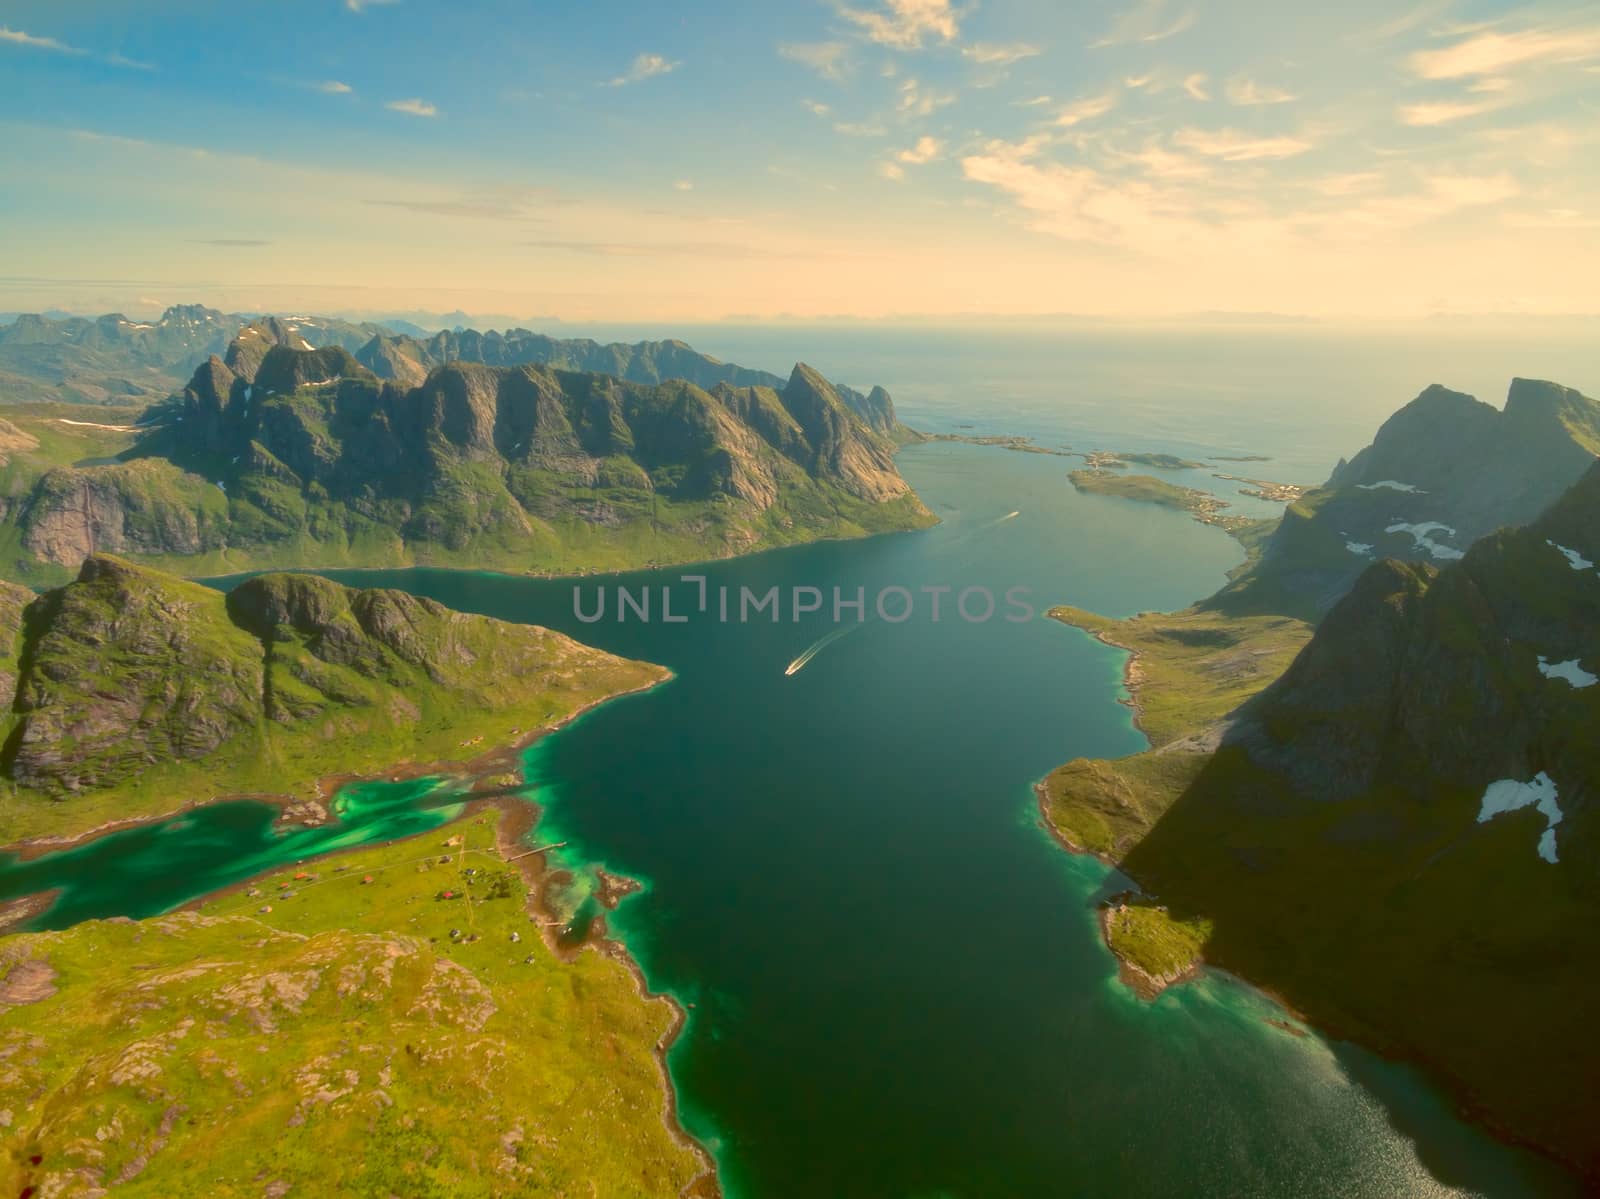 Reinefjorden, beautiful fjord on Lofoten islands in Norway